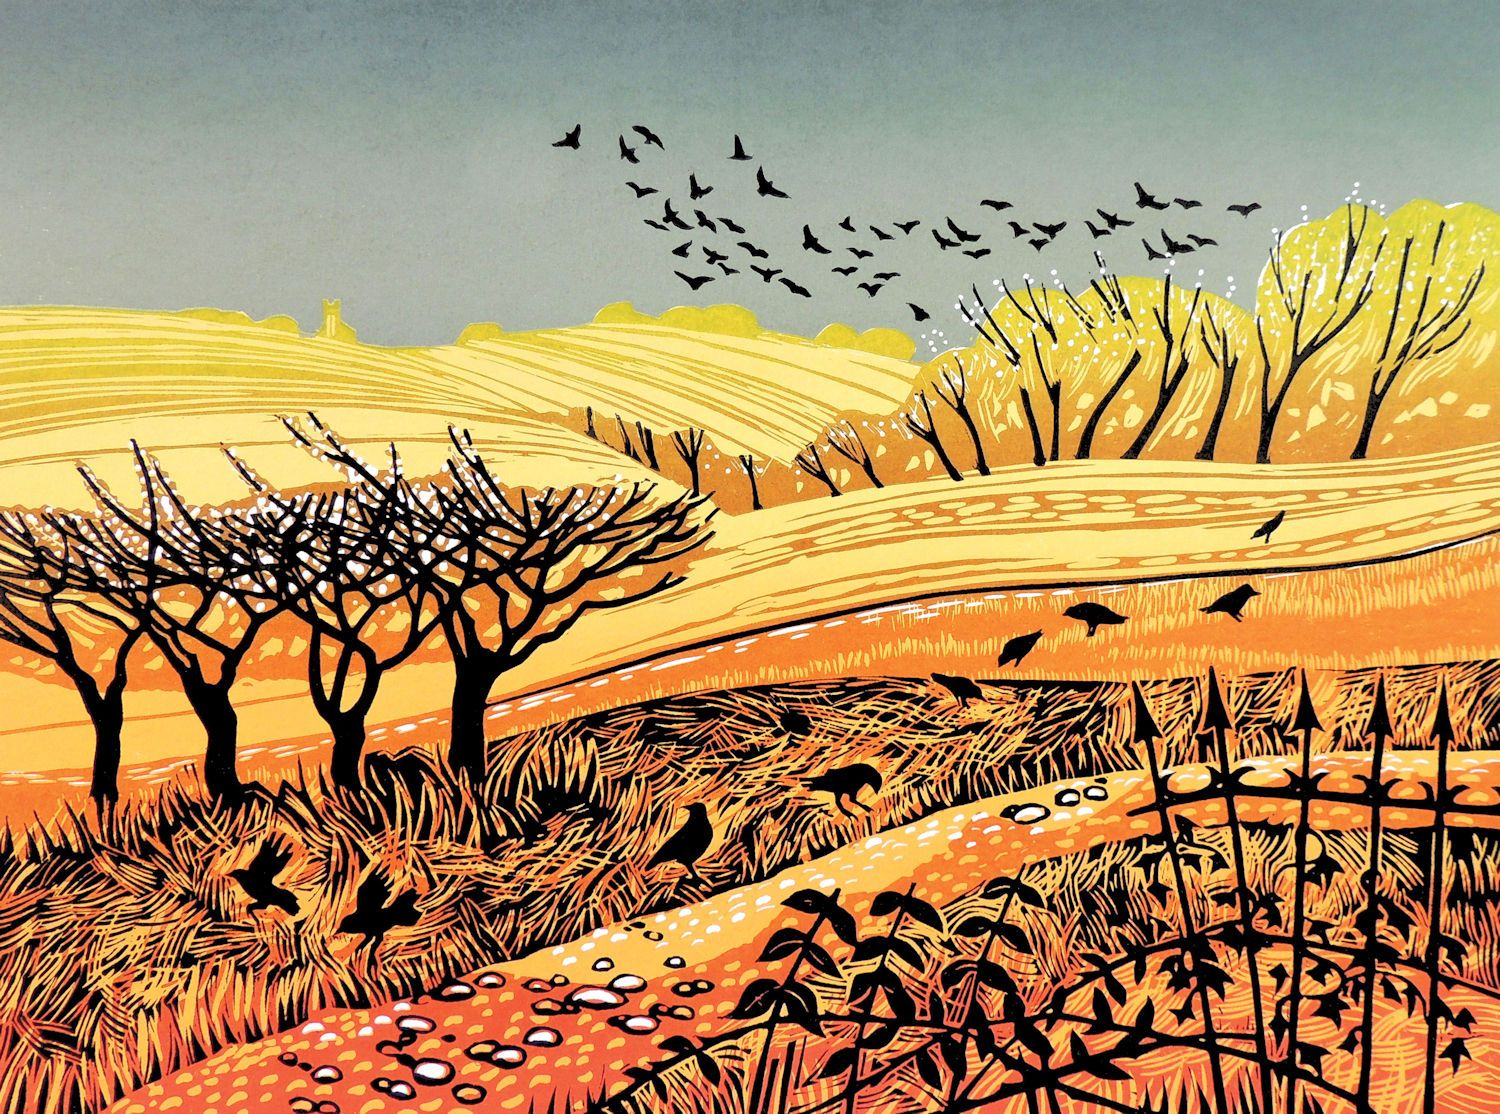 Sunlit Fields by Rob Barnes